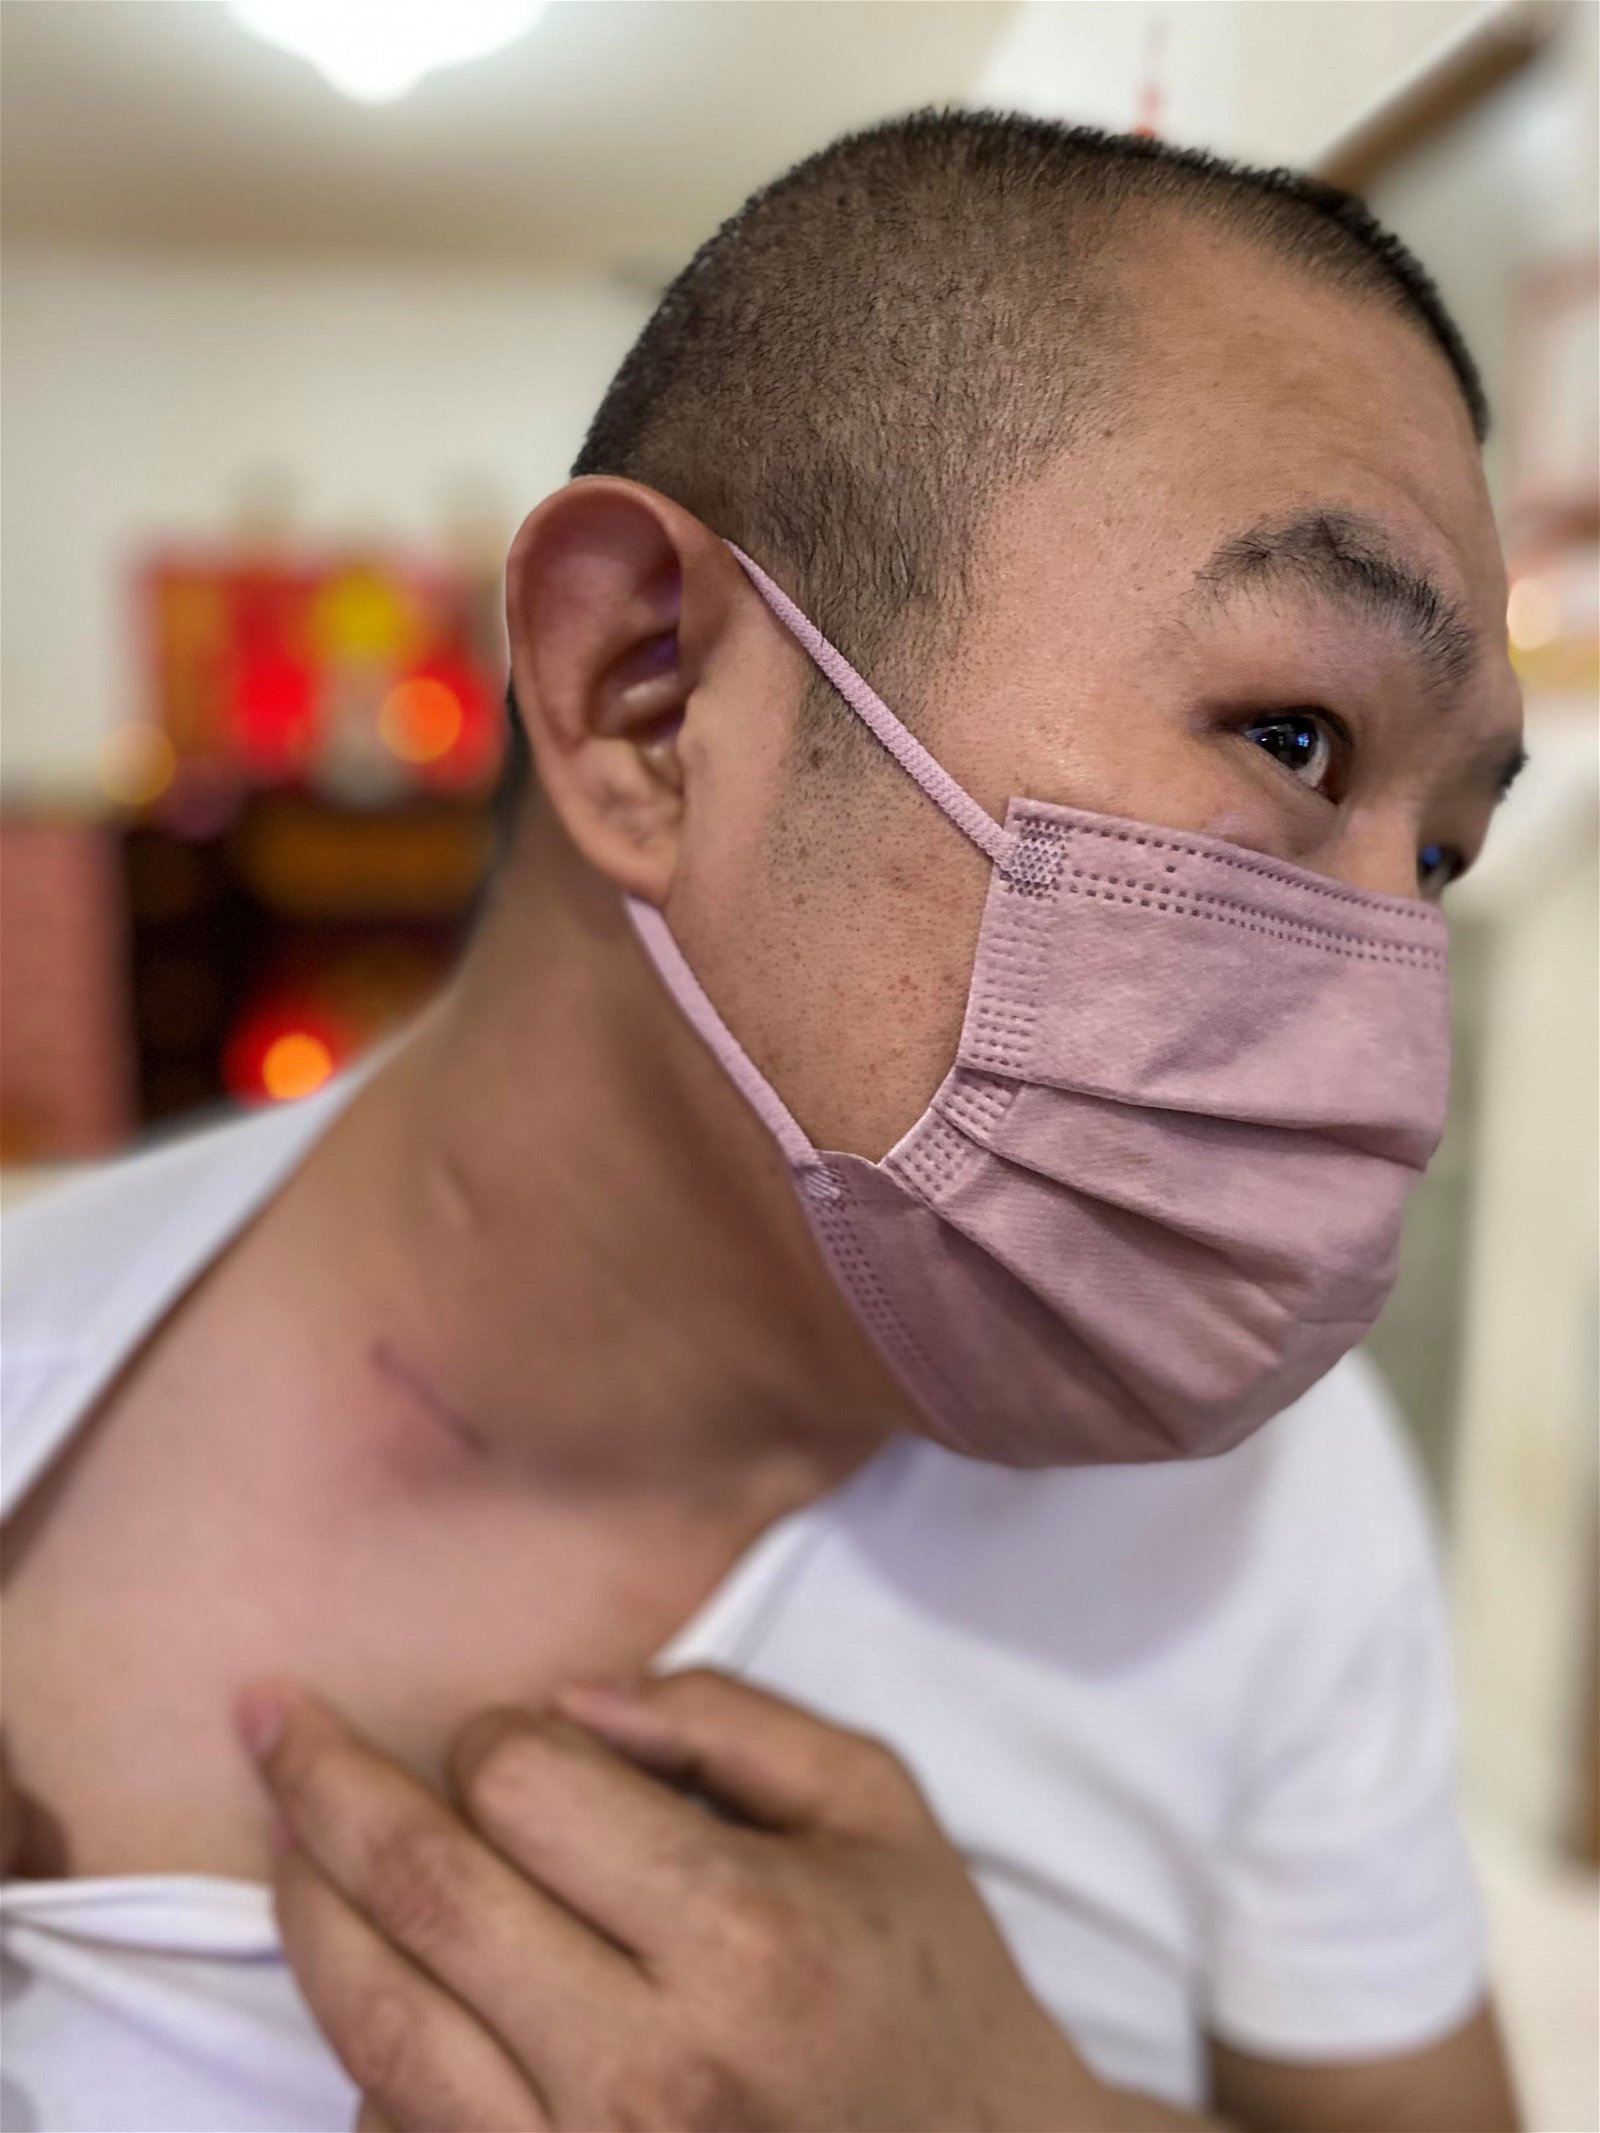 傅敦龙于2019年脖子上突然肿胀长了一个包，割除检验后被诊断患上淋巴癌第三期。